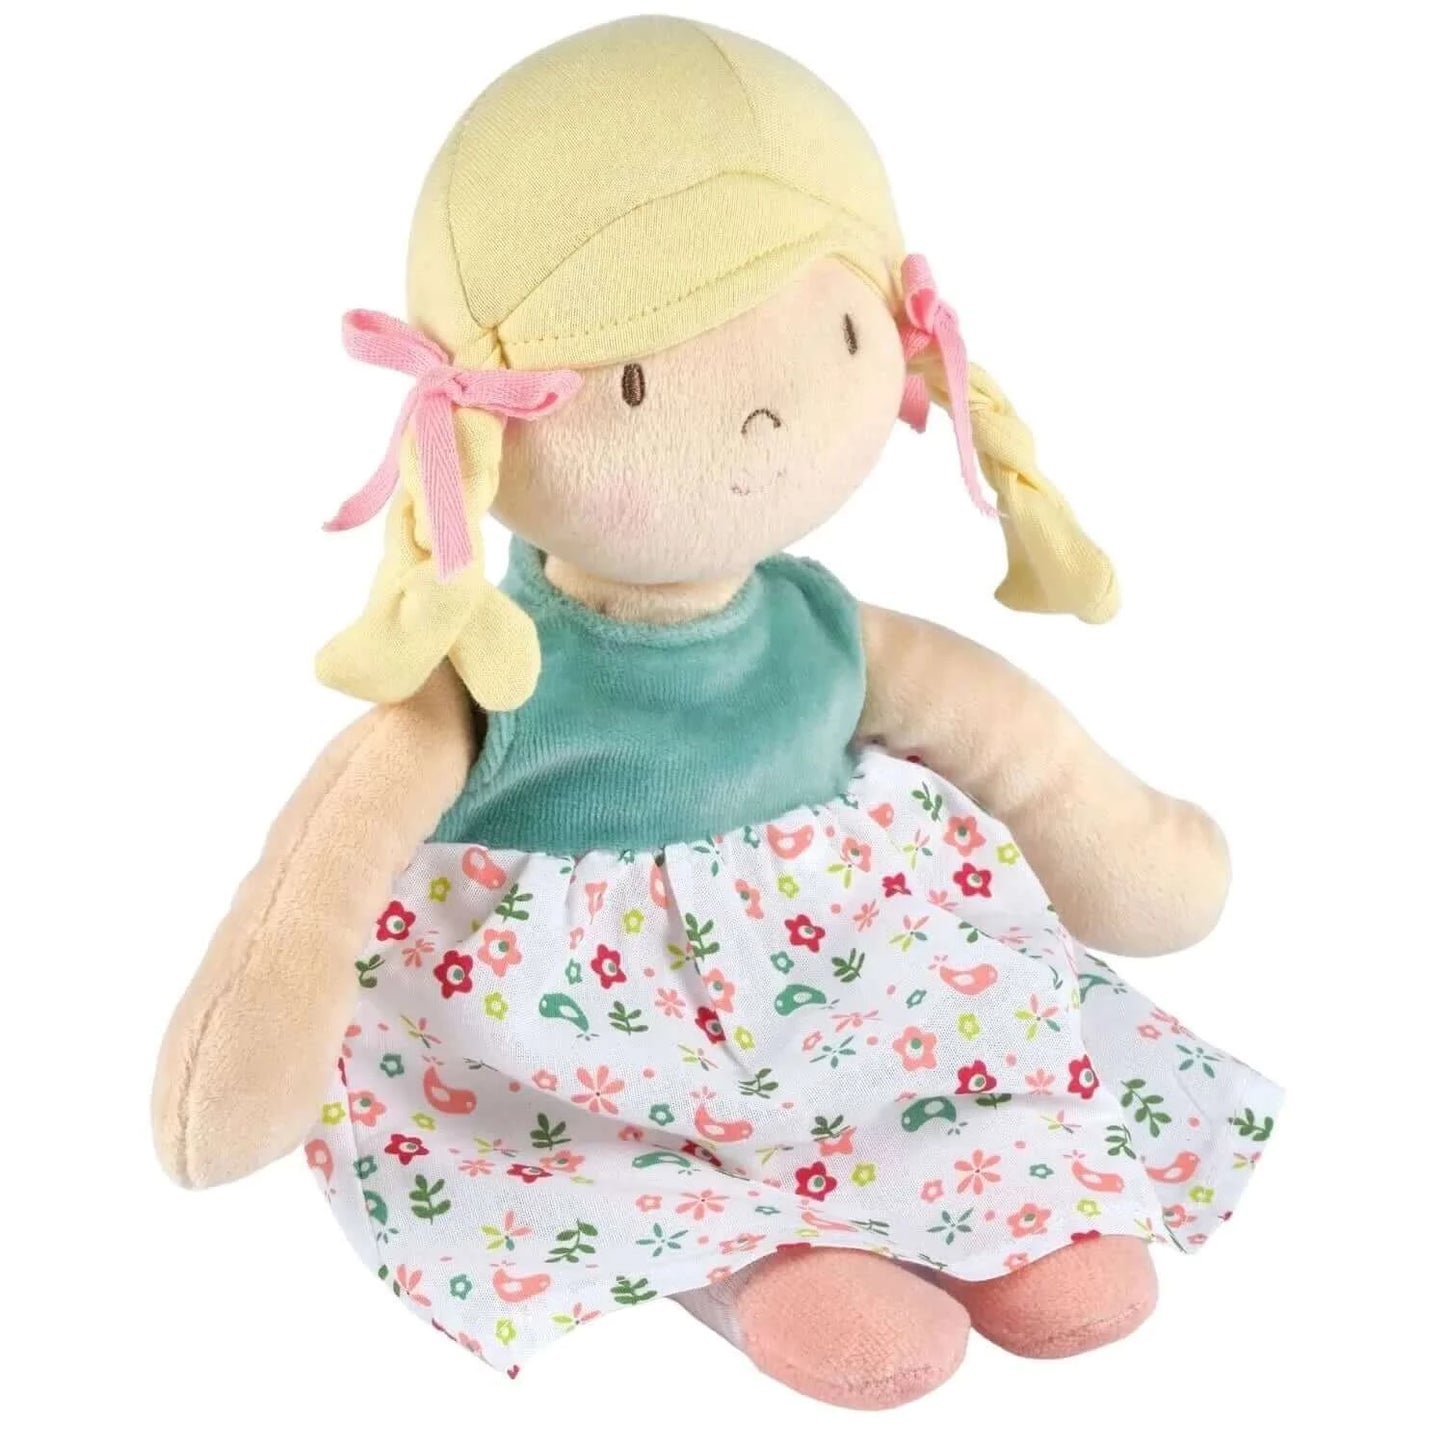 Abby Doll - Blonde Hair with Heat Pack, Tikiri Toys, eco-friendly Toys, Mountain Kids Toys